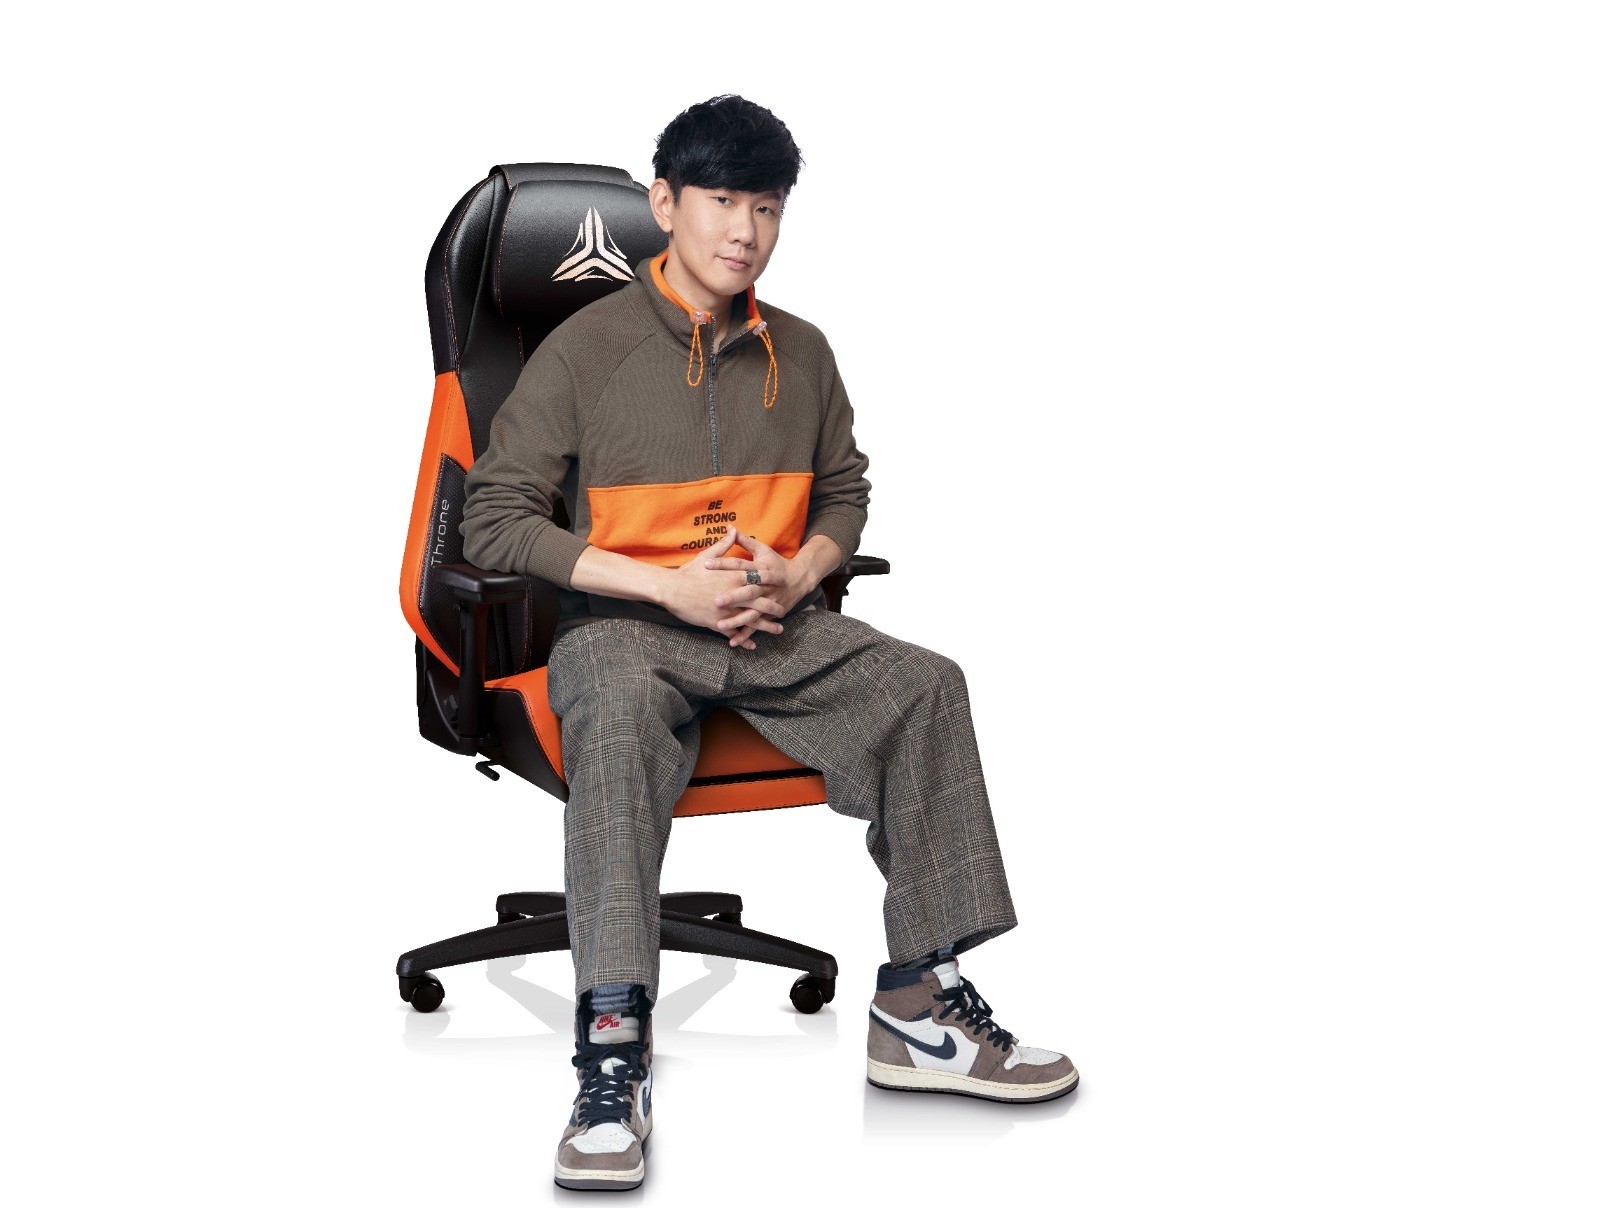 OSIM 與林俊傑合作全球限量 18 張訂製版電競按摩椅 贈送蕭敬騰、五月天阿信等名人開箱